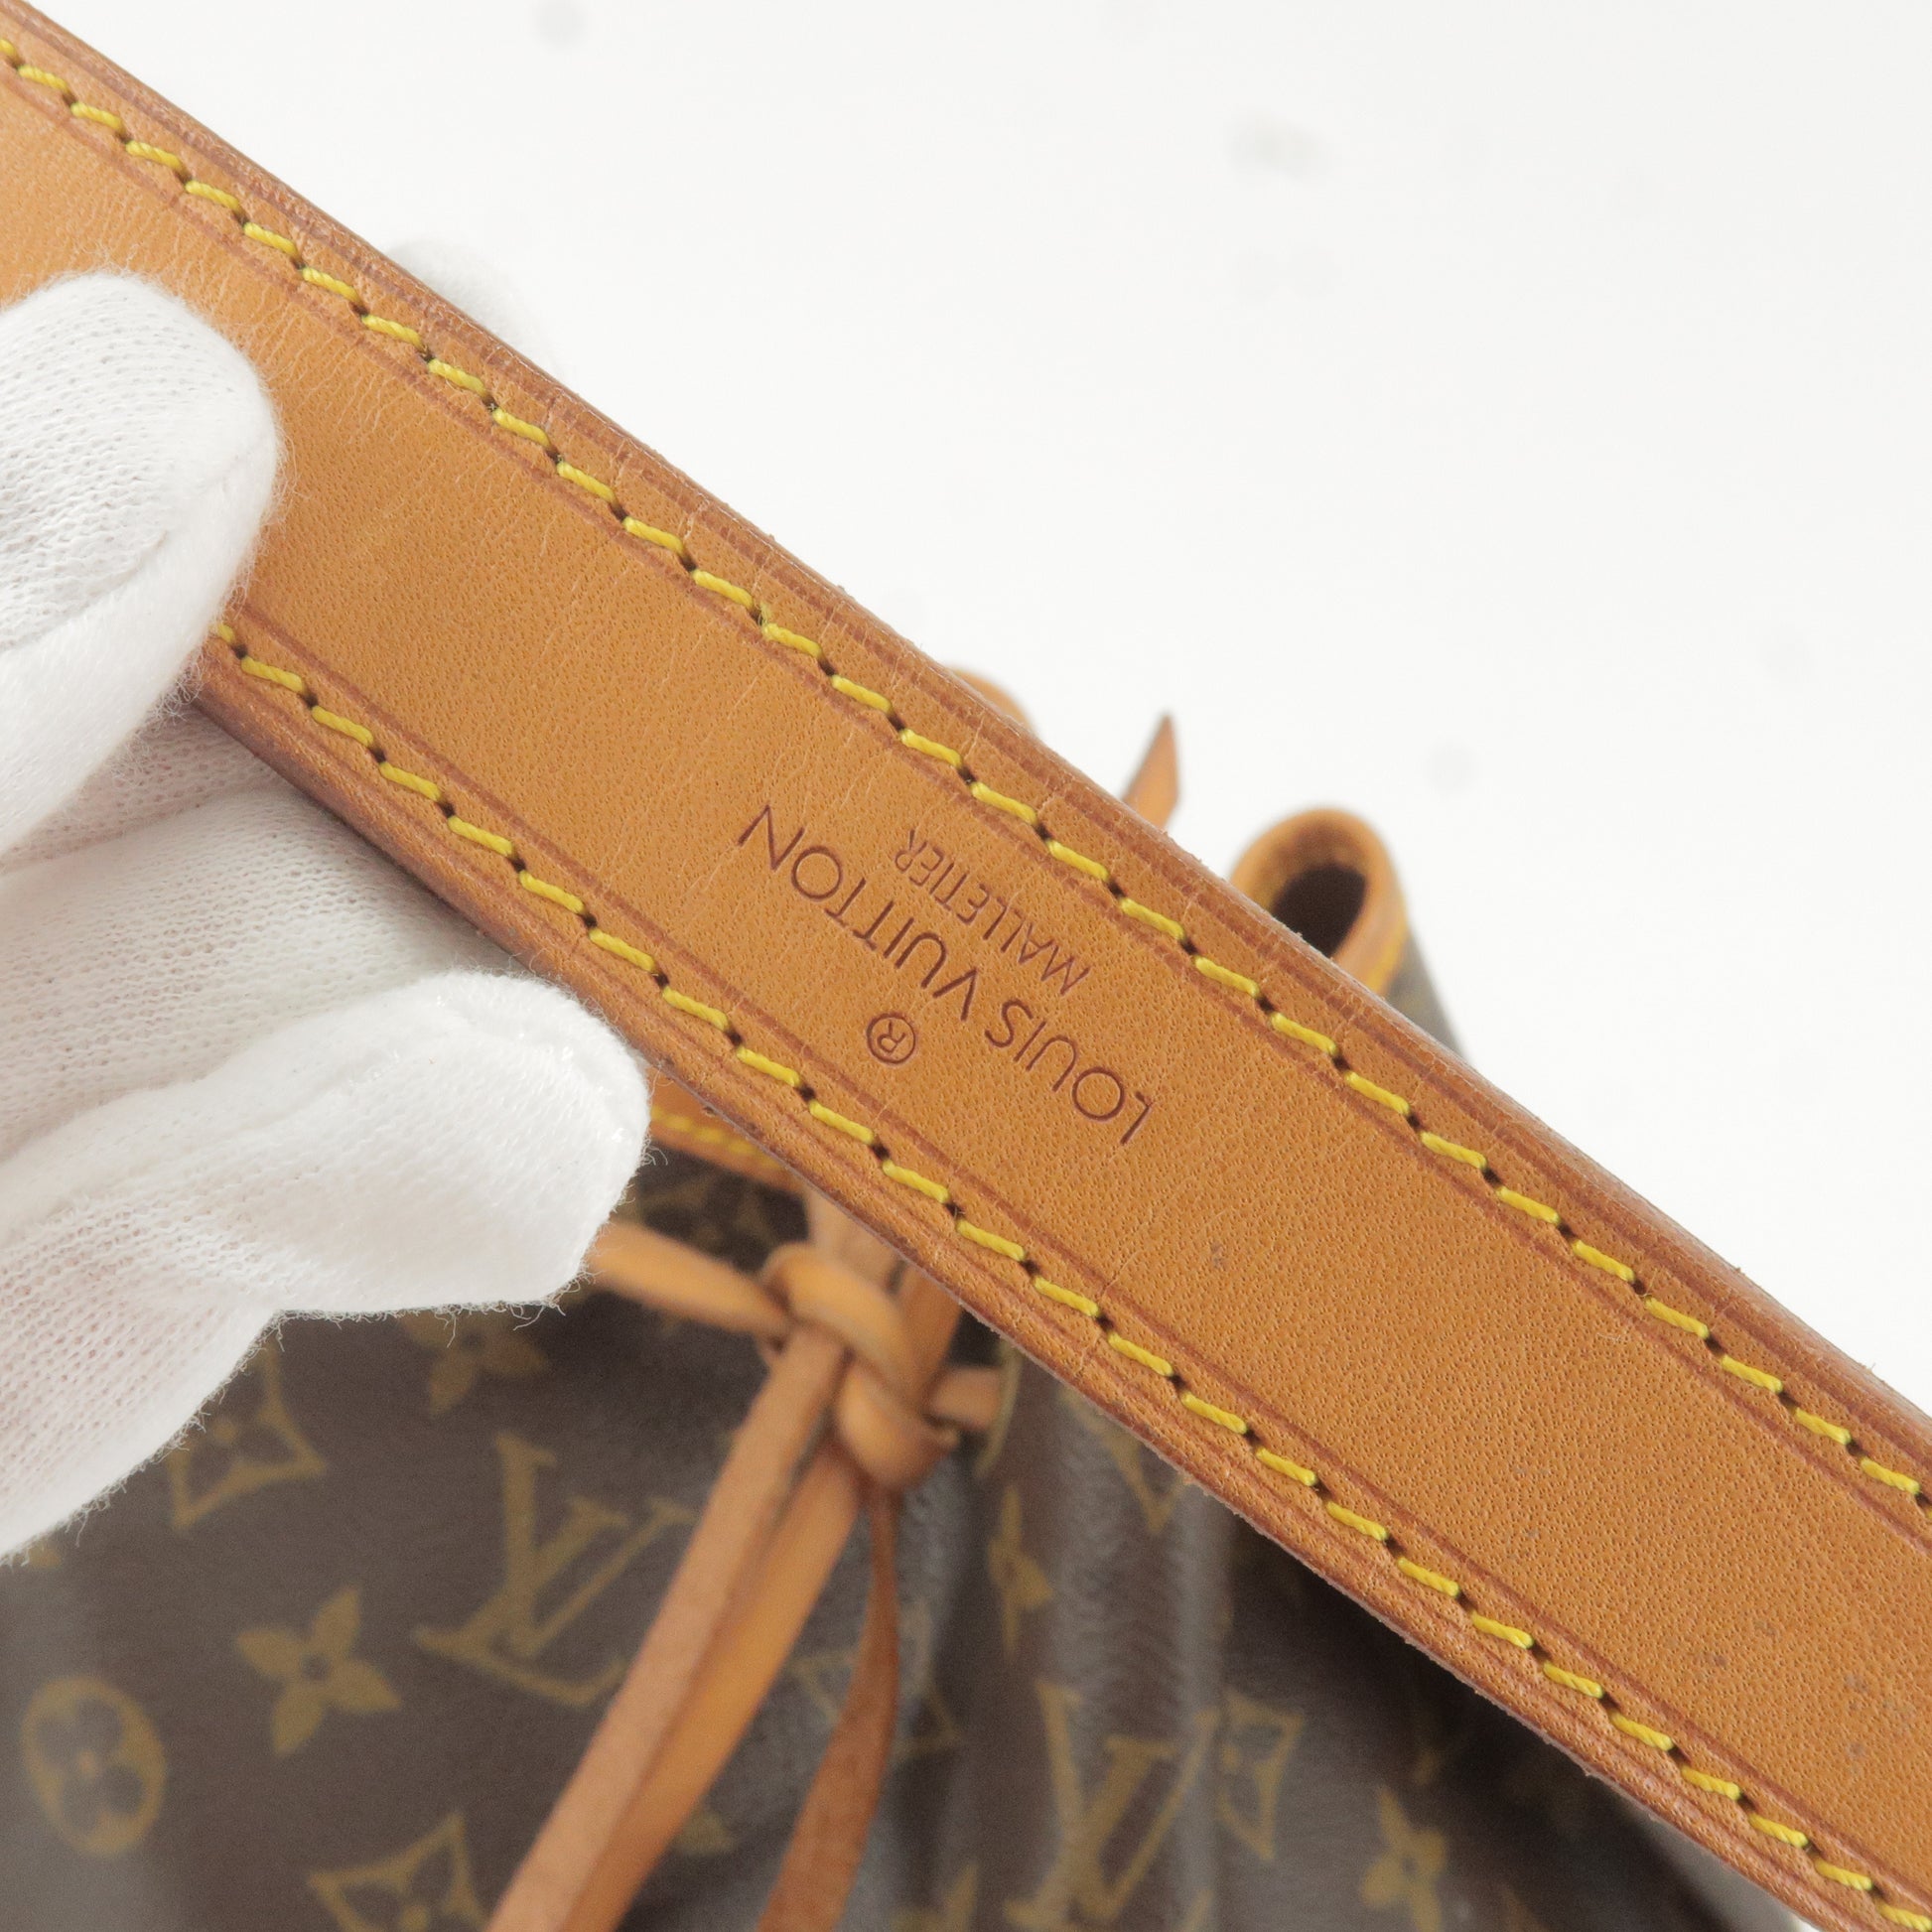 Louis Vuitton Limited Edition Since 1854 Monogram Petite Malle bag